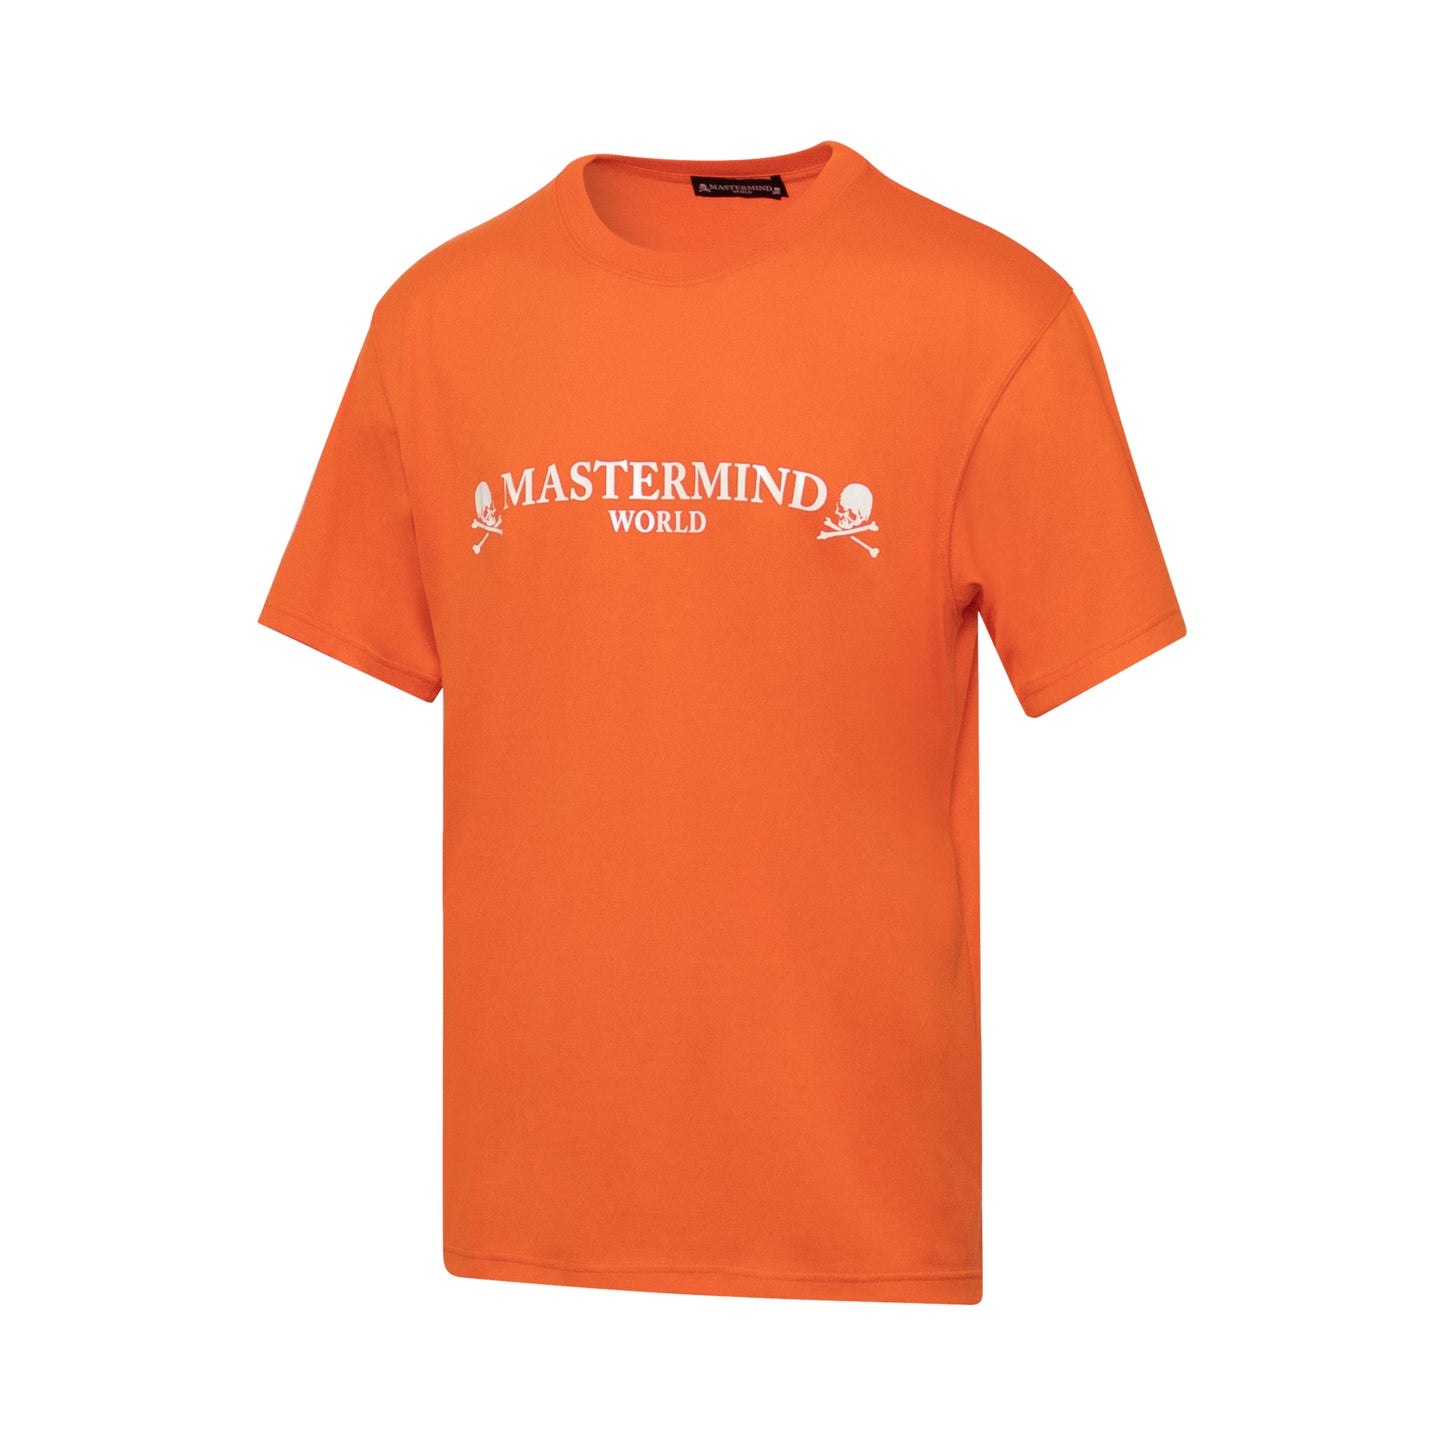 Mastermind World T-Shirt in Orange